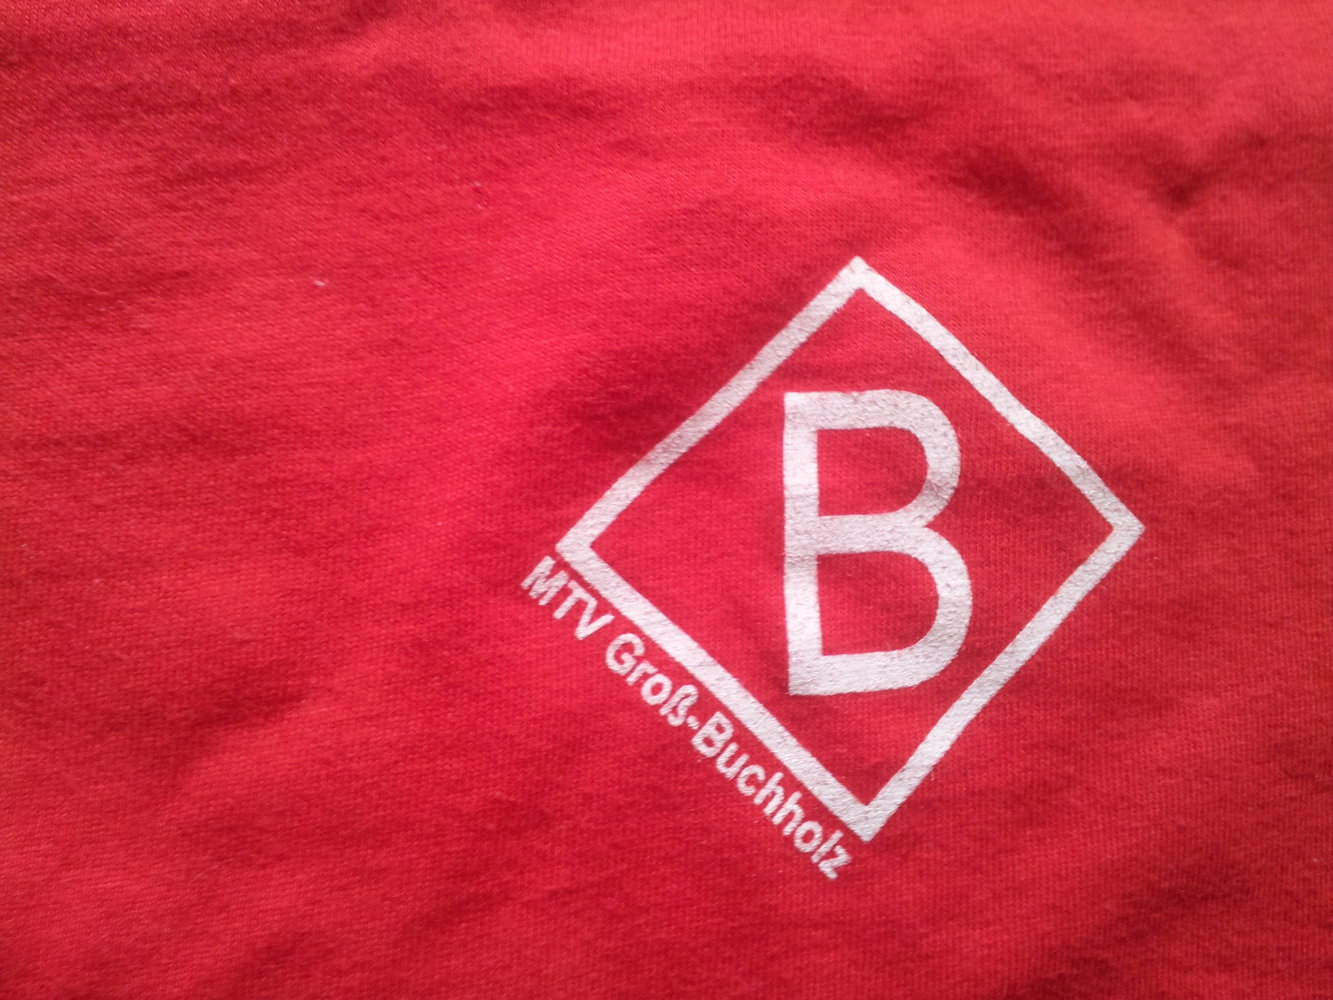  Shirt rot MTV Groß- Buchholz Hannover Baumwolle Gr. XL